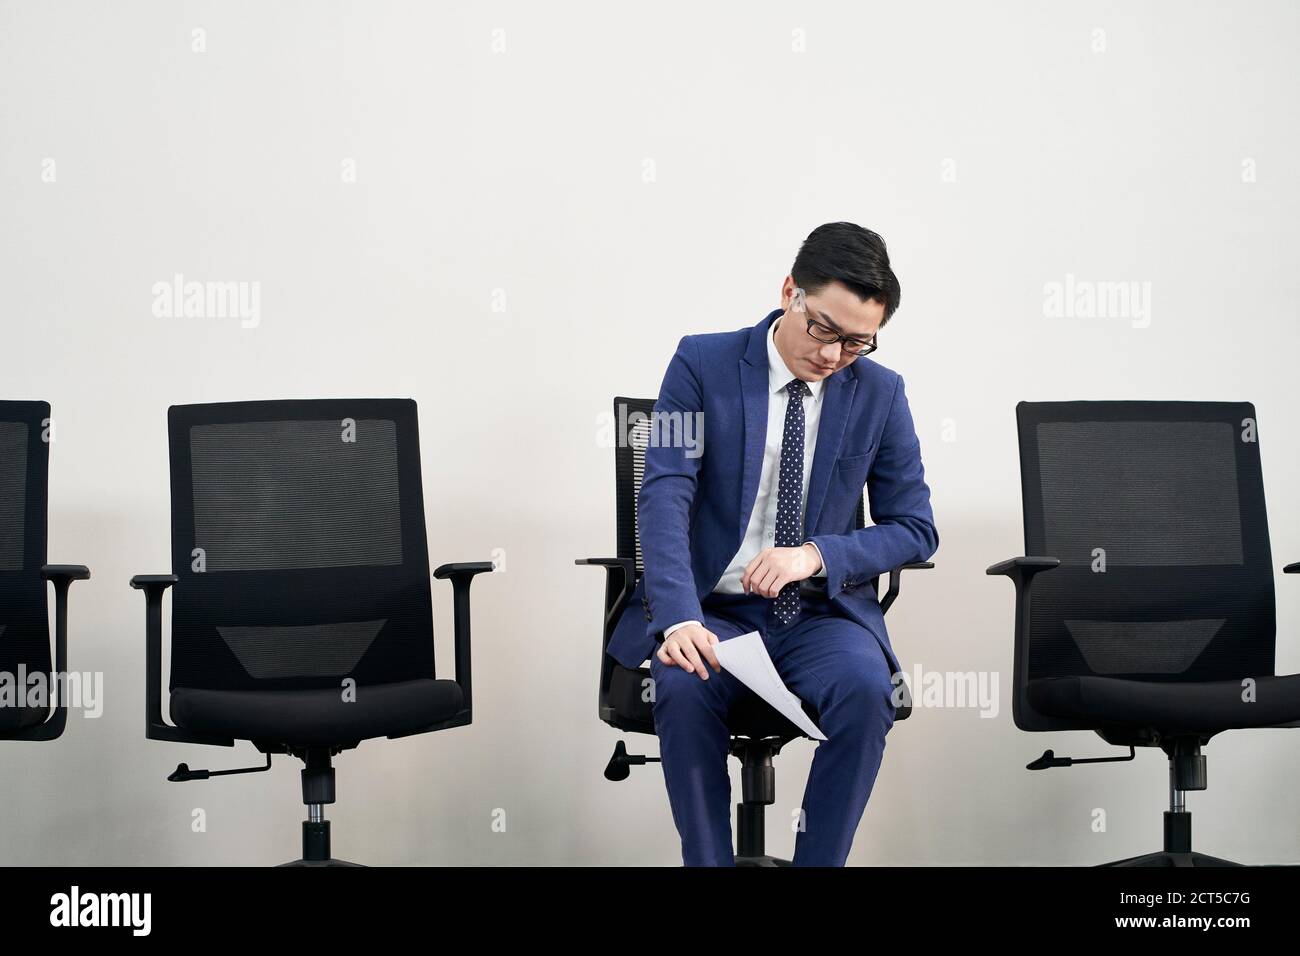 Junge asiatische männliche Arbeitssuchende sitzen in Stuhl mit Kopf Down scheint frustriert und besiegt zu sein Stockfoto